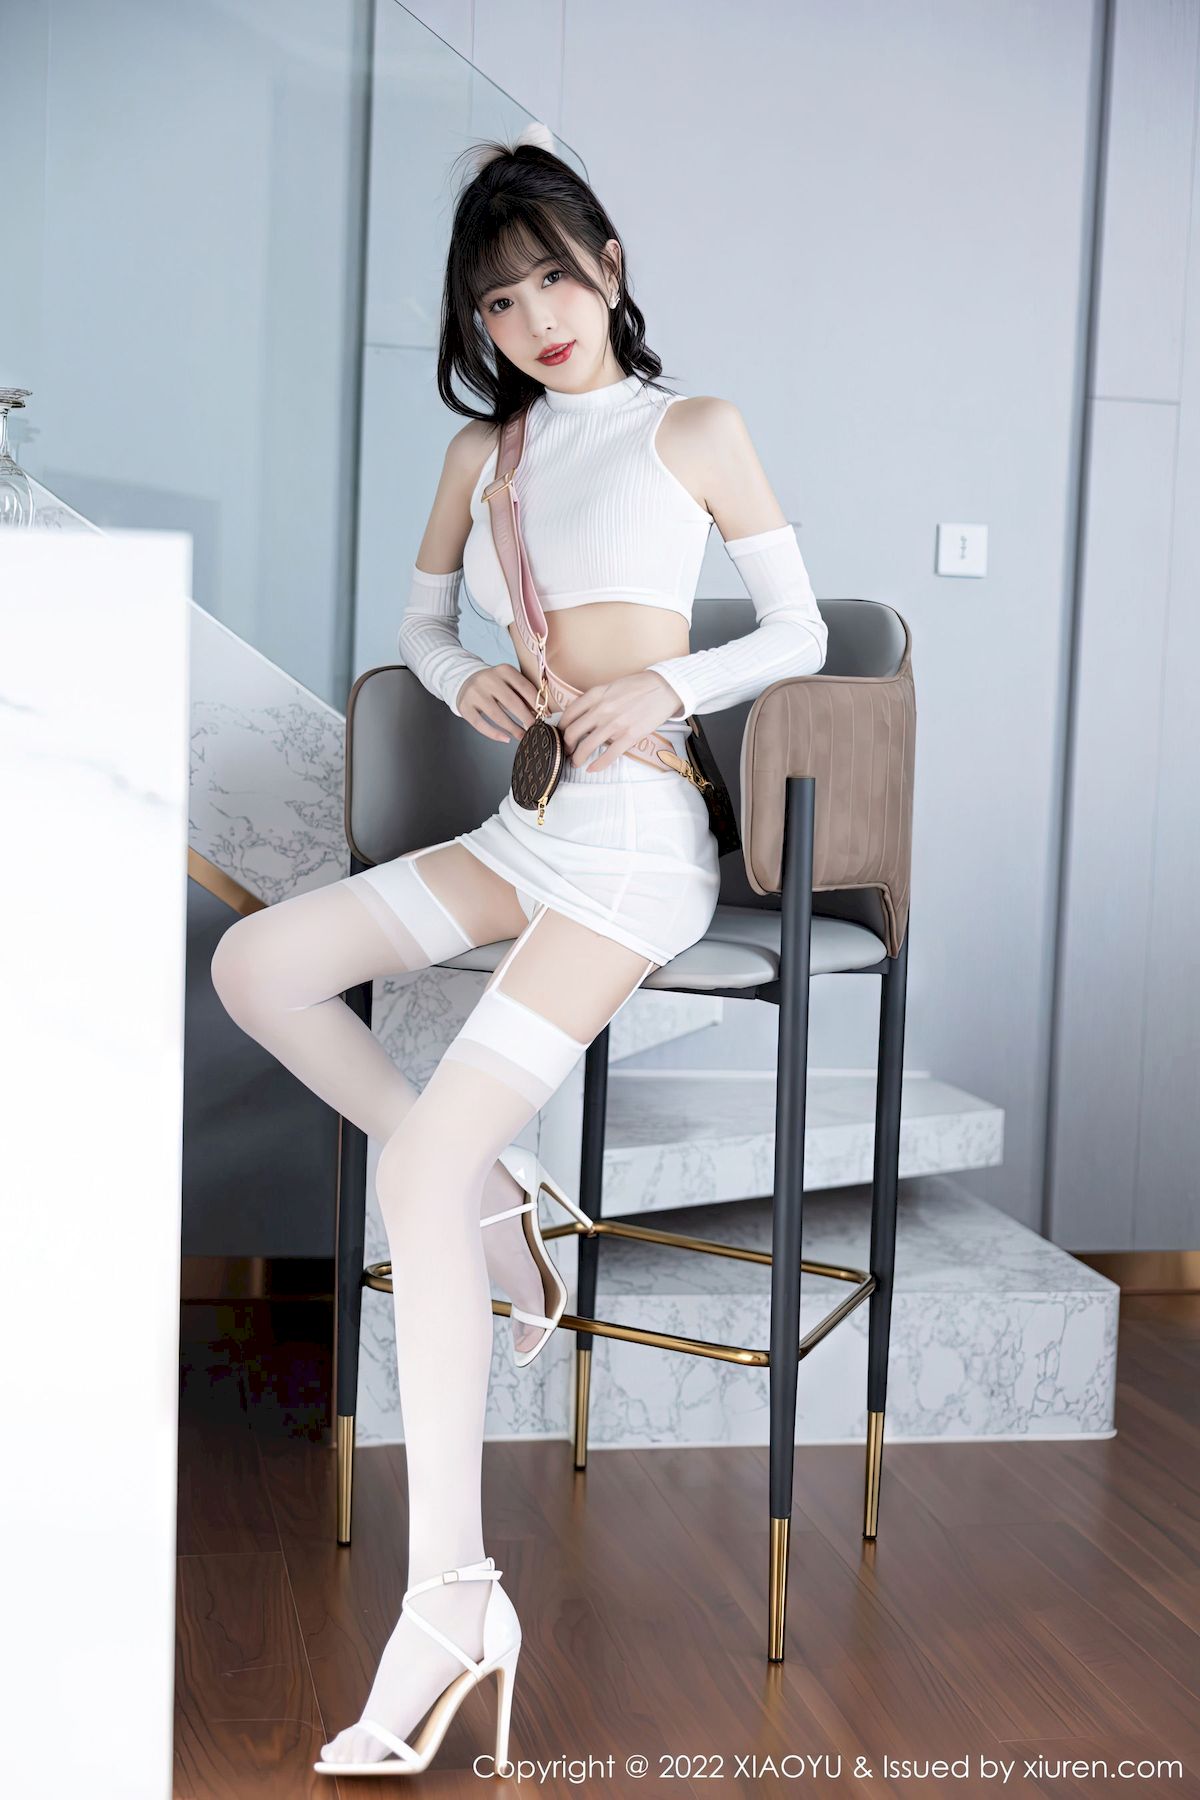 林星阑 - 白色短款上衣+白色丝袜性感写真